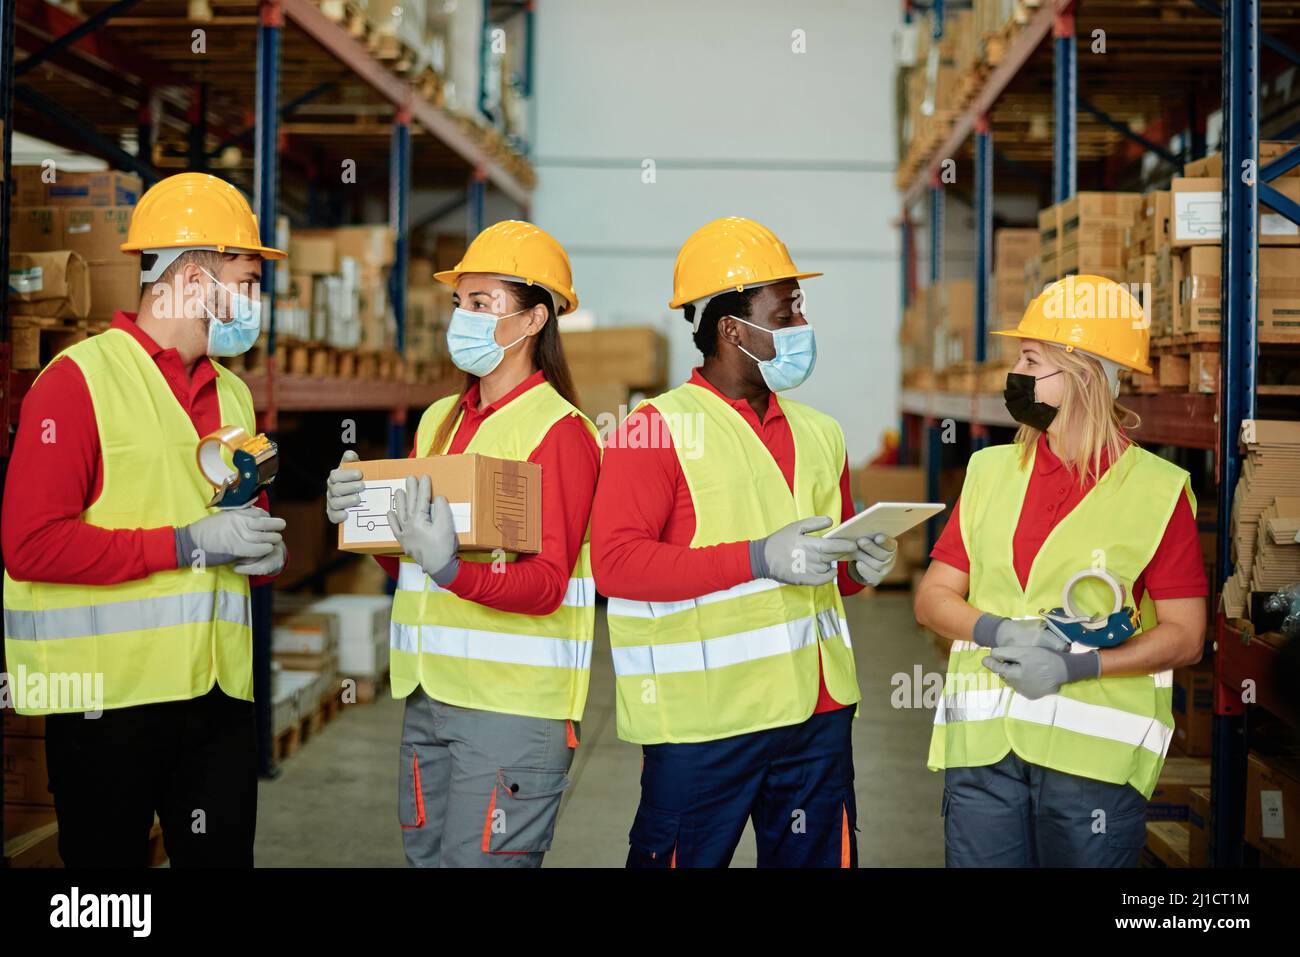 Gruppo multirazziale di operai di magazzino tiene la scatola di consegna, ordina l'ipad mentre indossa la maschera di sicurezza per la prevenzione del coronavirus - Focus sui volti Foto Stock